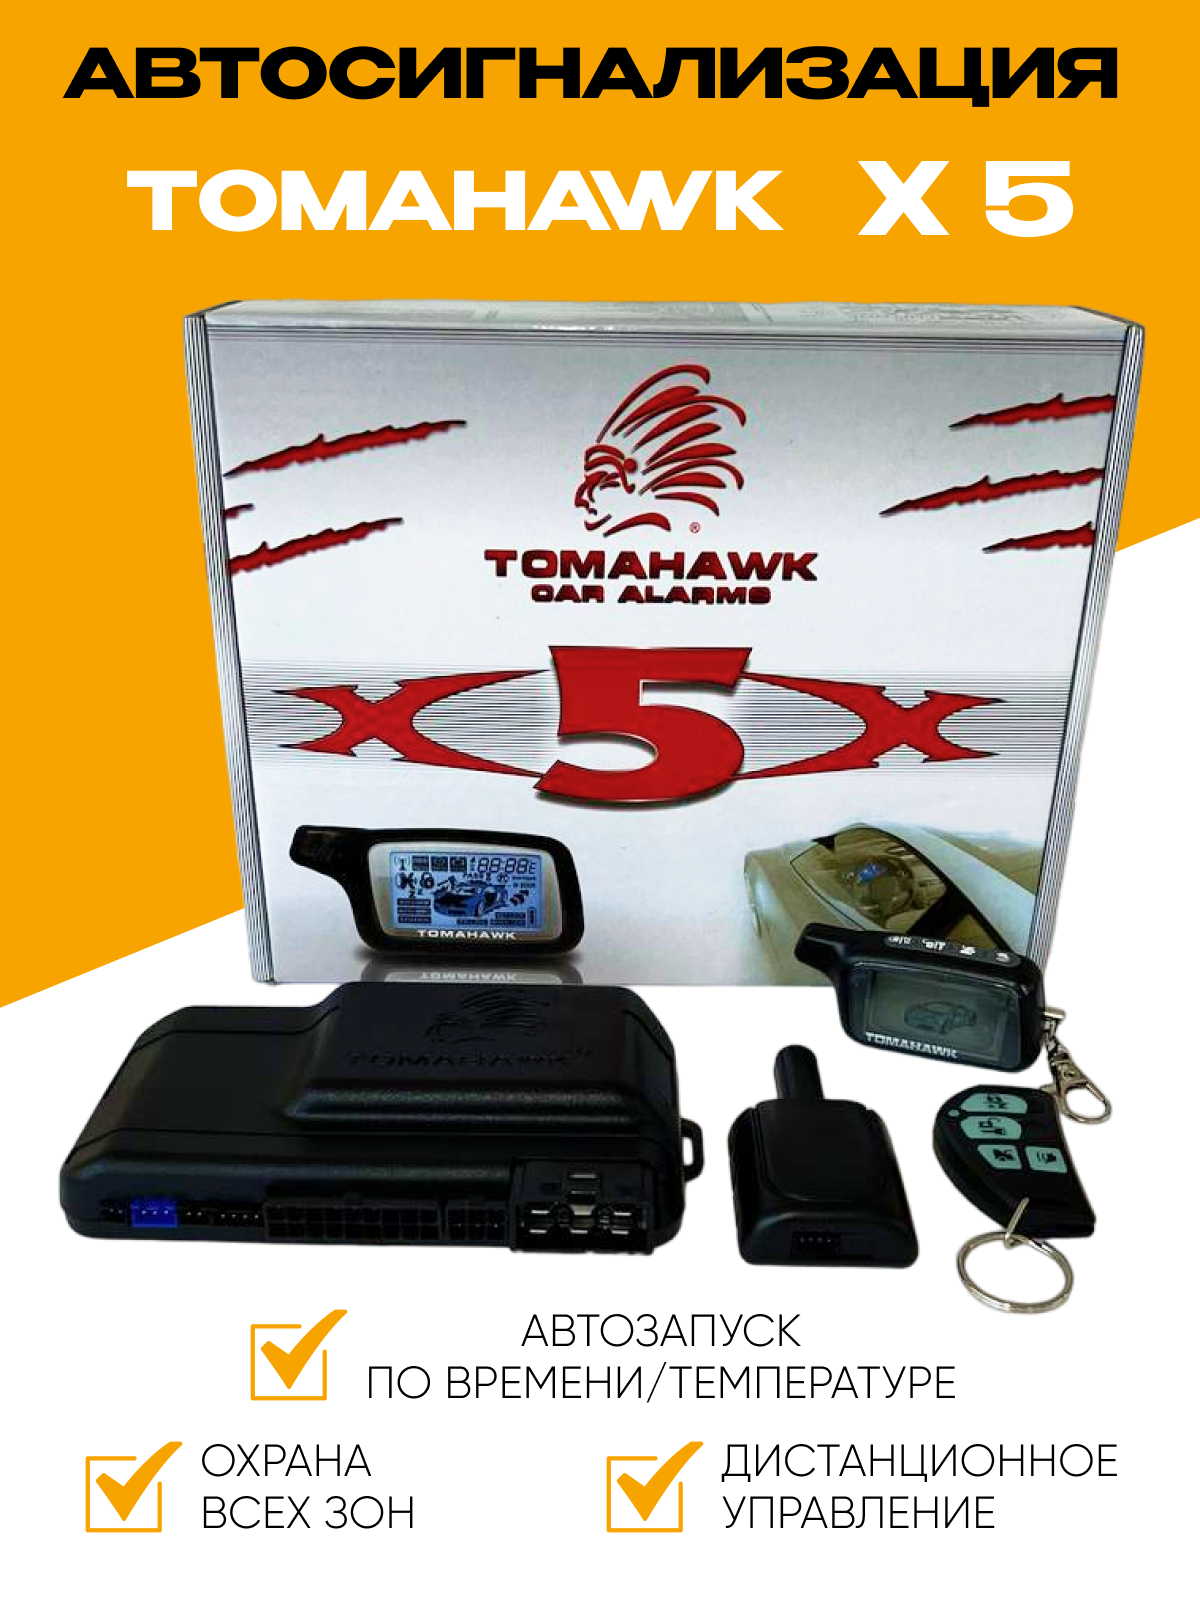 Автосигнализация Х5 комплект совместимая с Tomahawk X